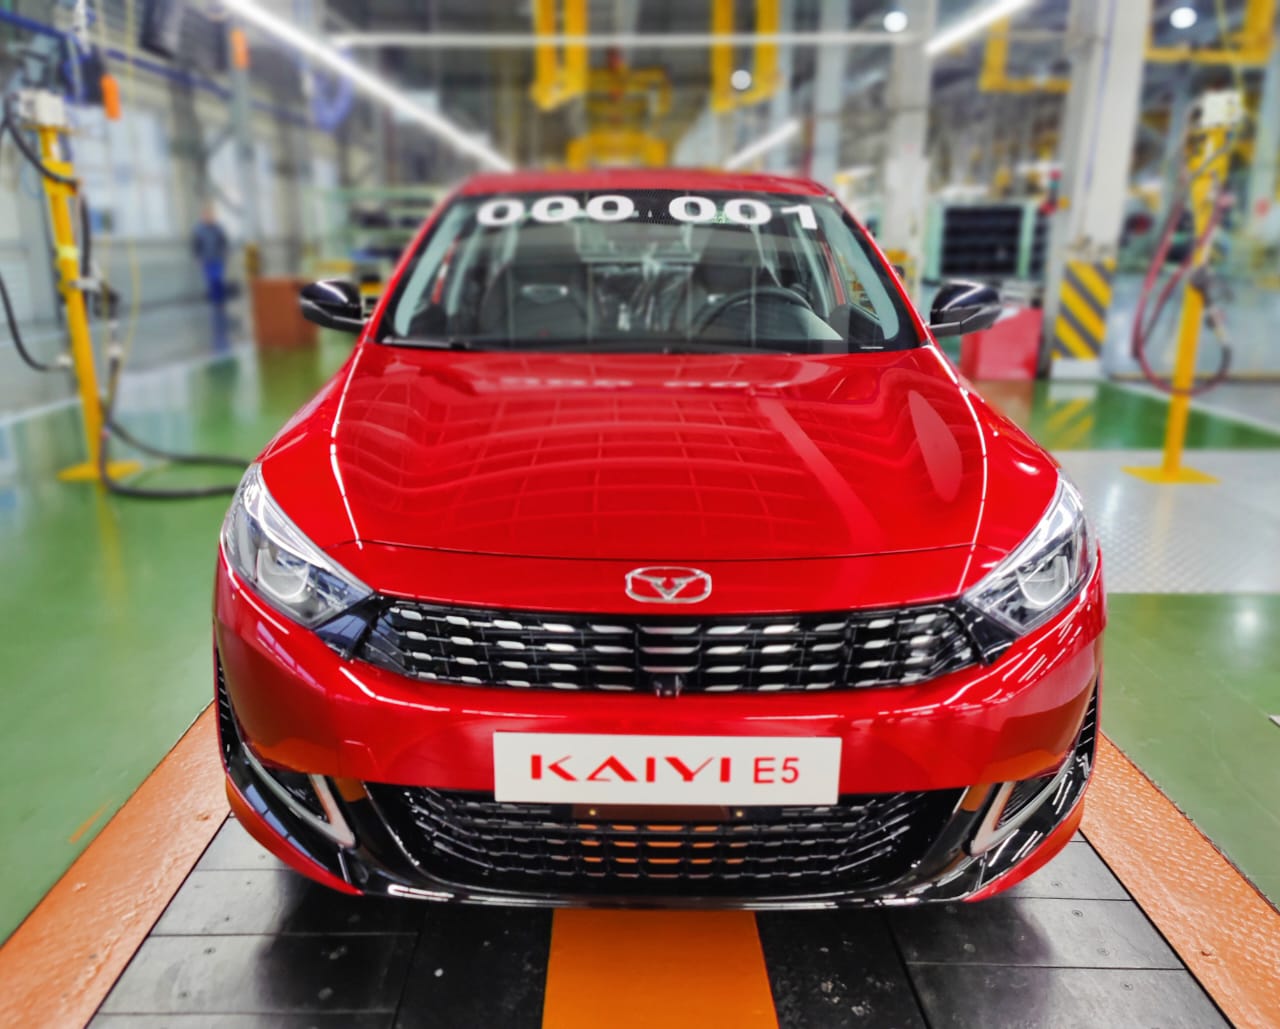 Каи вместо Киа: в России началось производство автомобилей нового китайского бренда